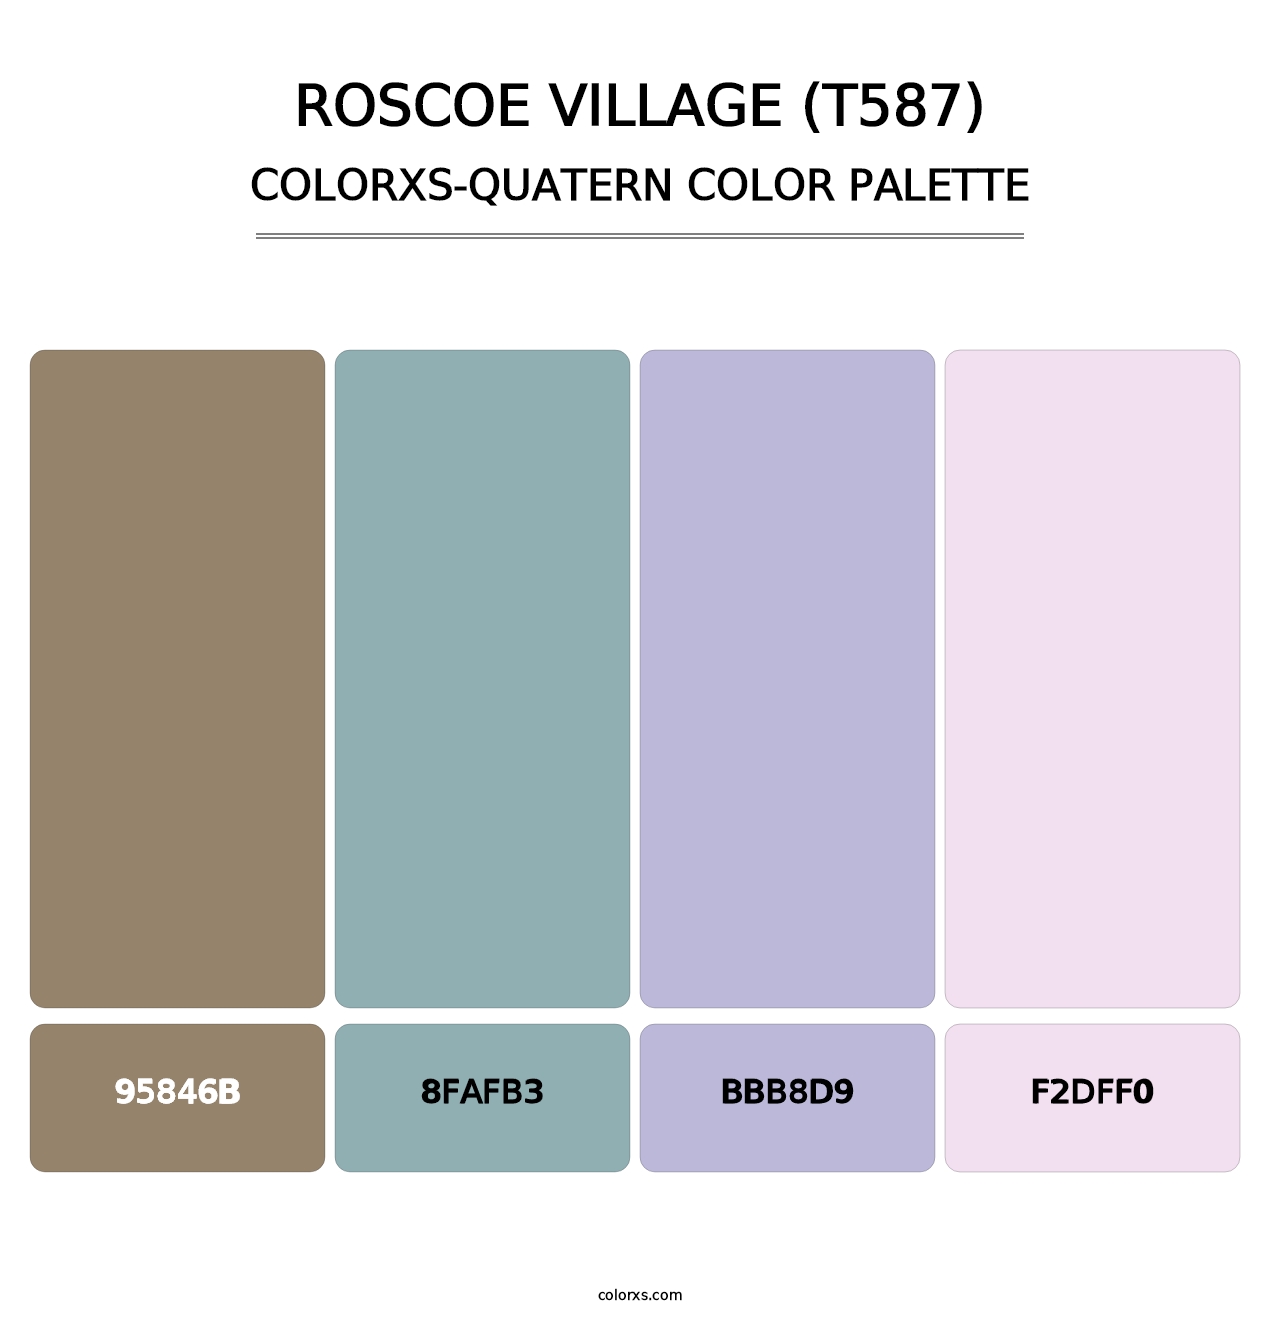 Roscoe Village (T587) - Colorxs Quatern Palette